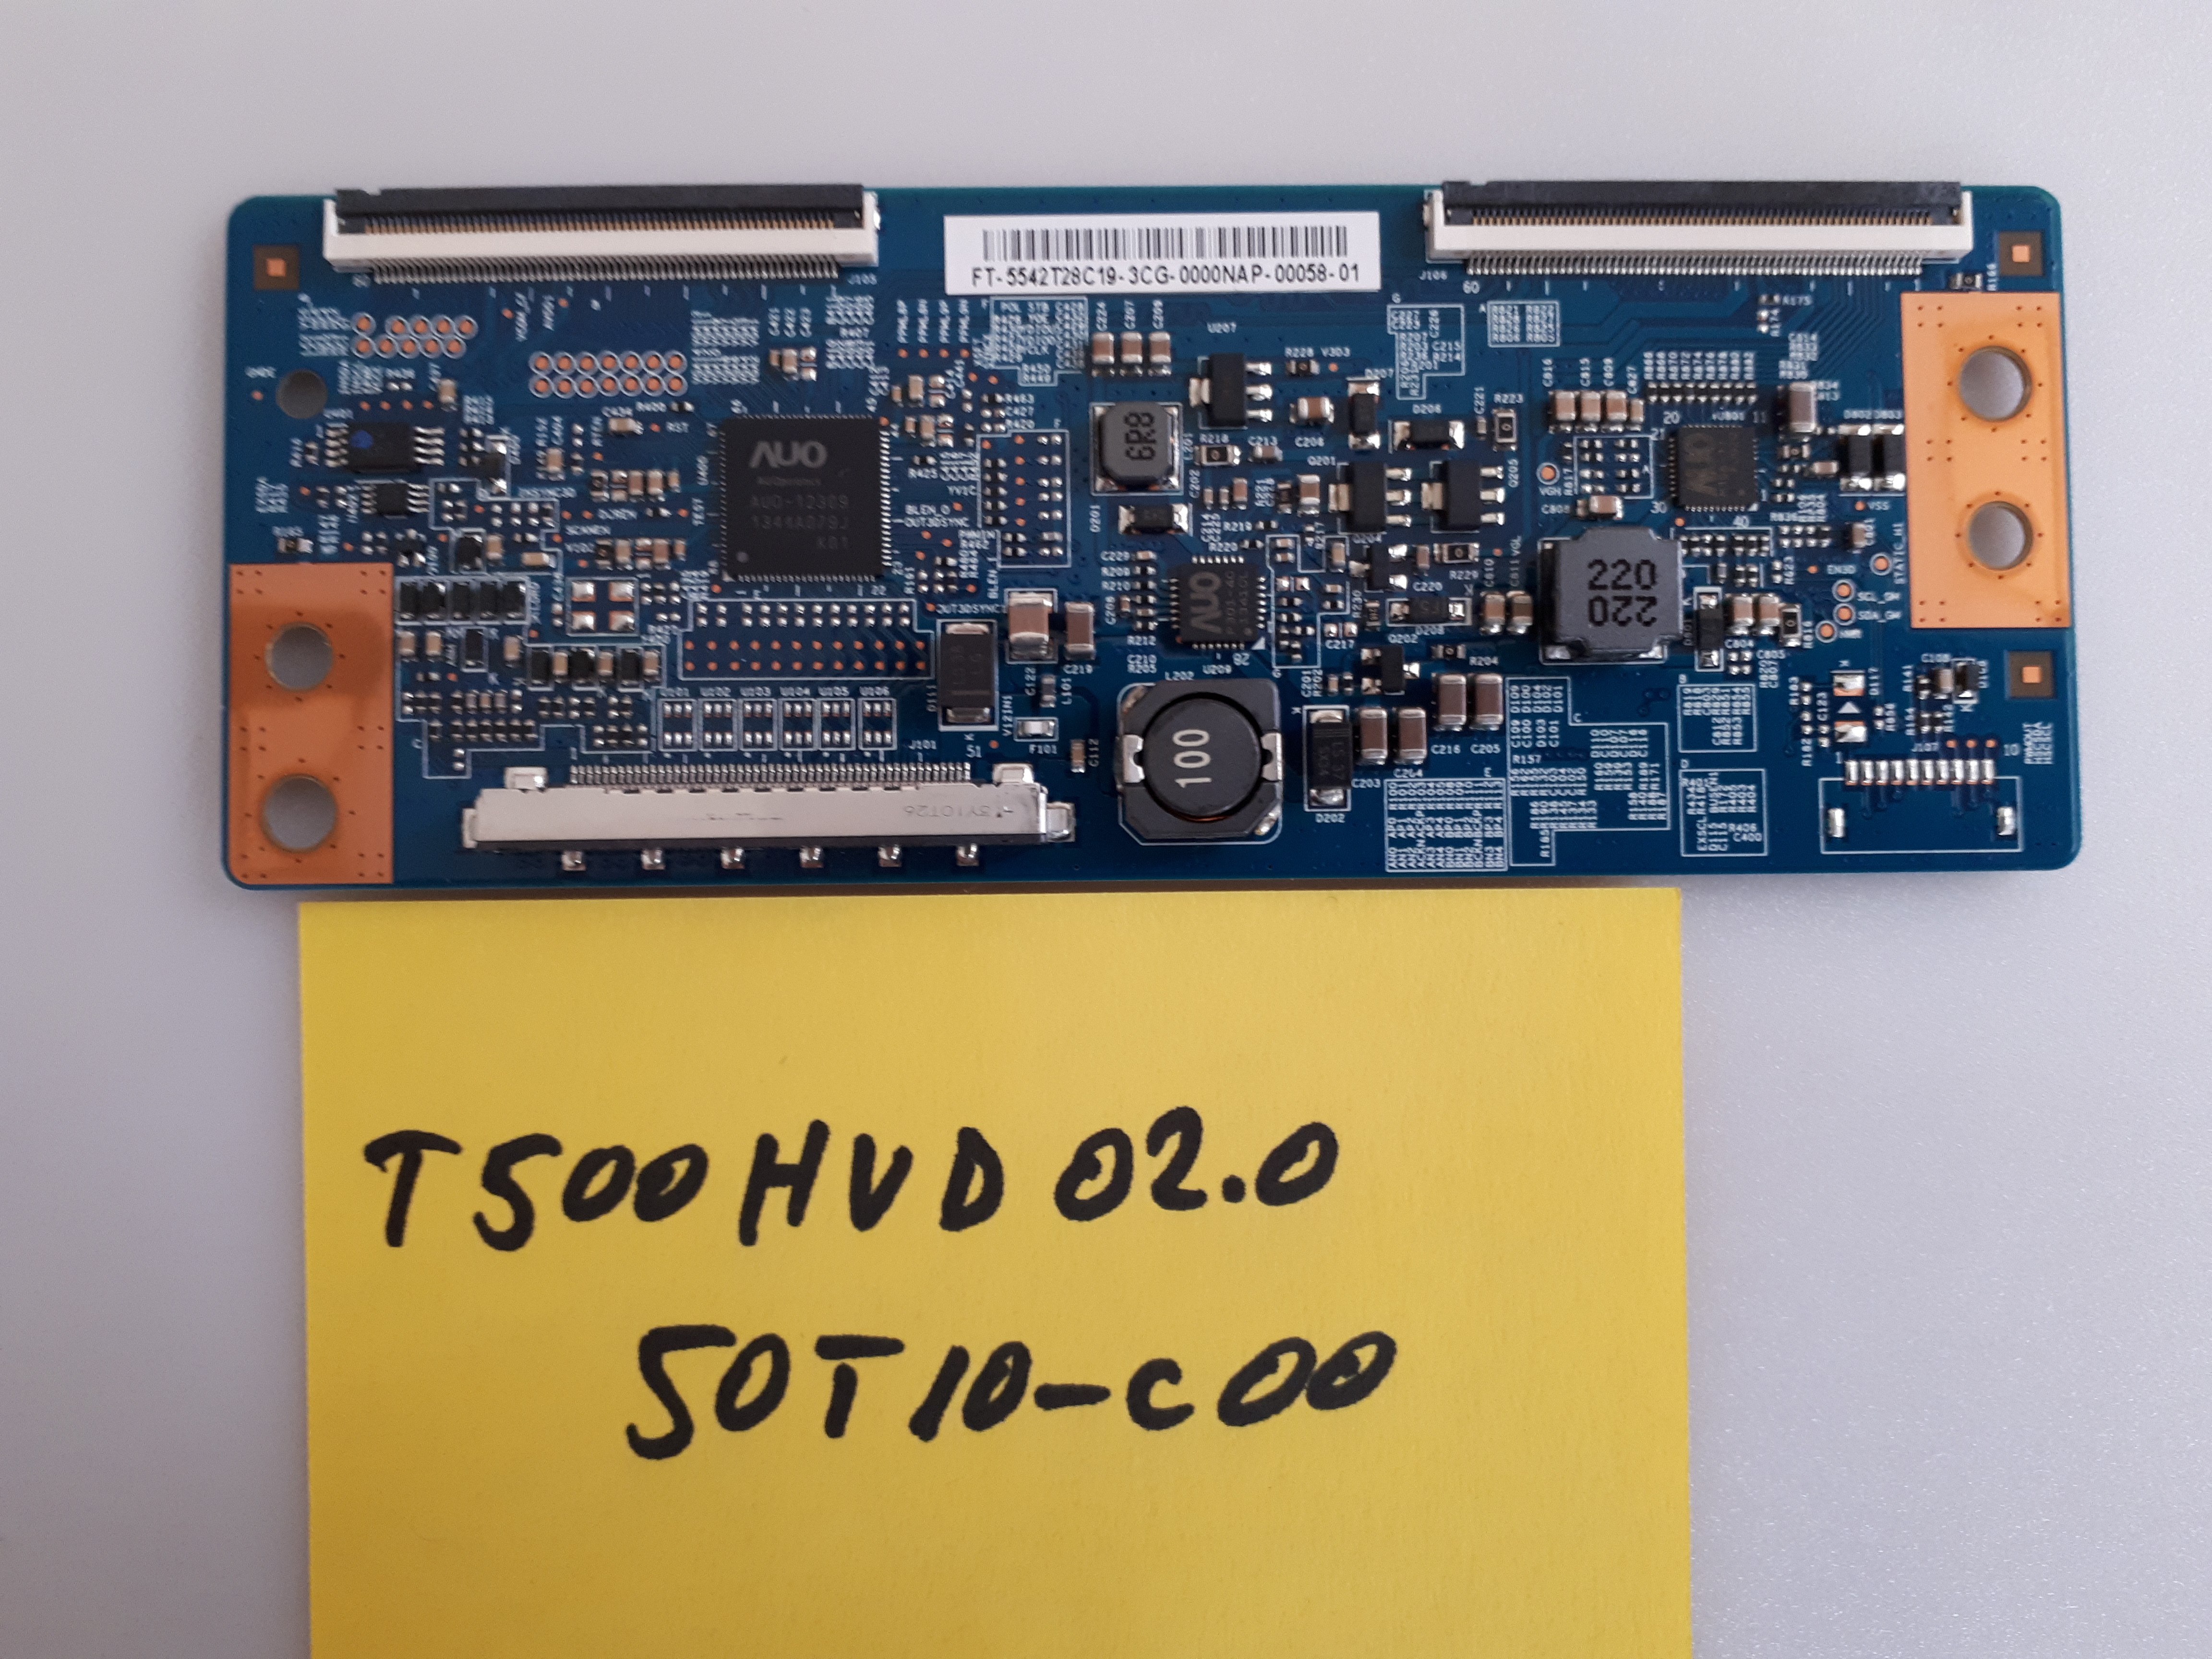 T500HVD02.0  50T10-C00